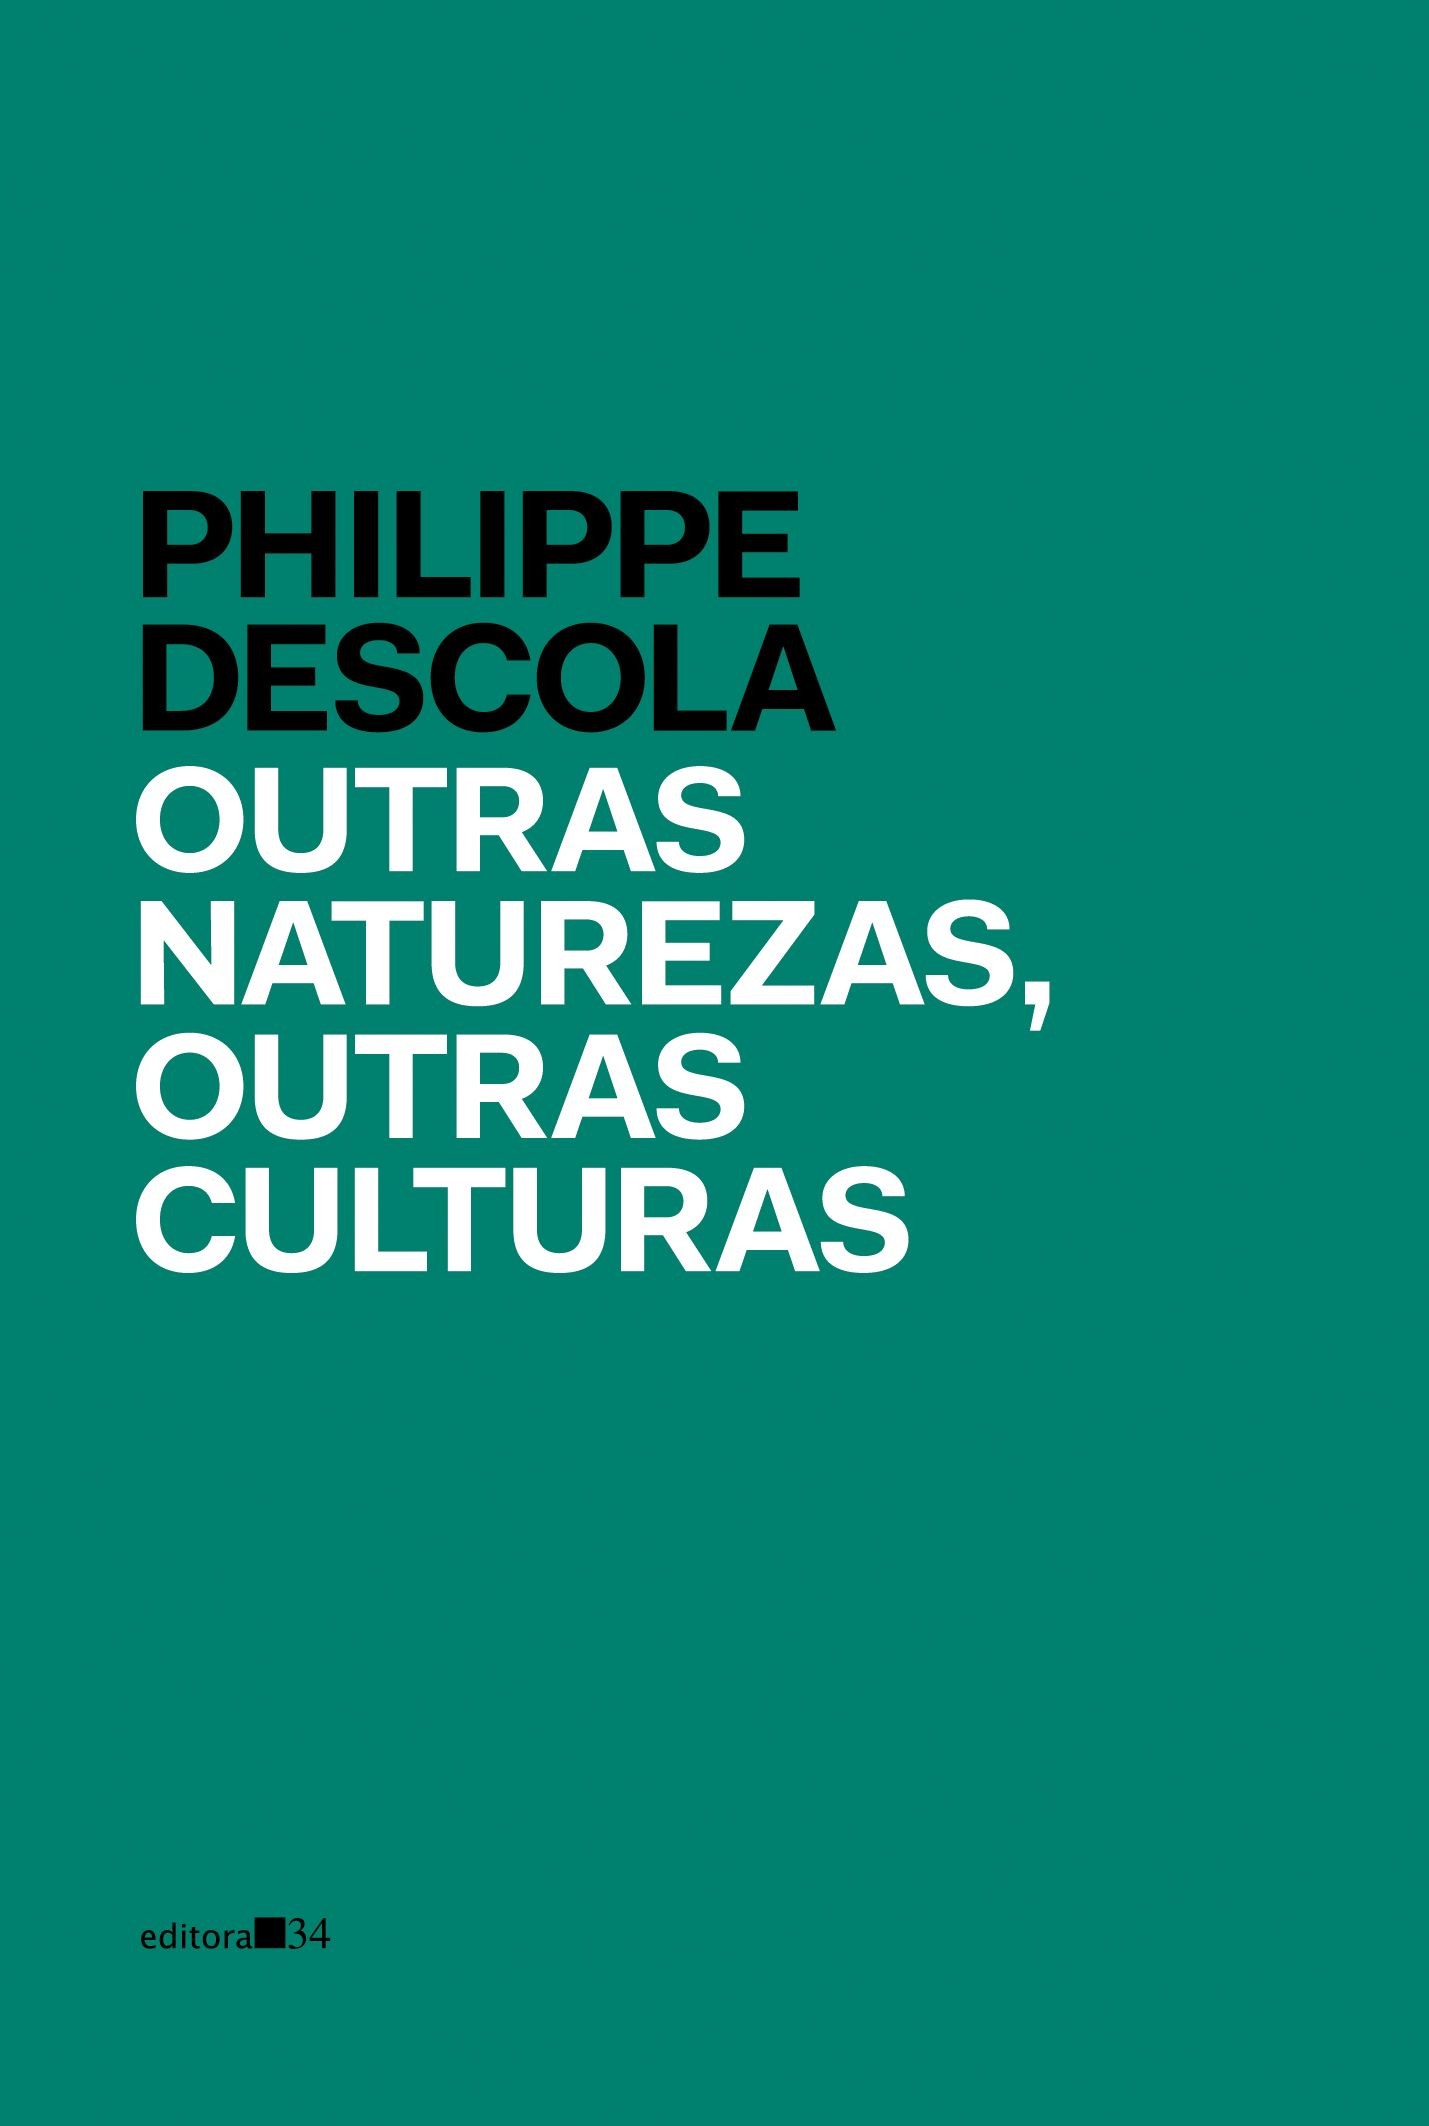 Philippe Descola: Outras naturezas, outras culturas (Paperback, Português language, 2016, Editora 34)